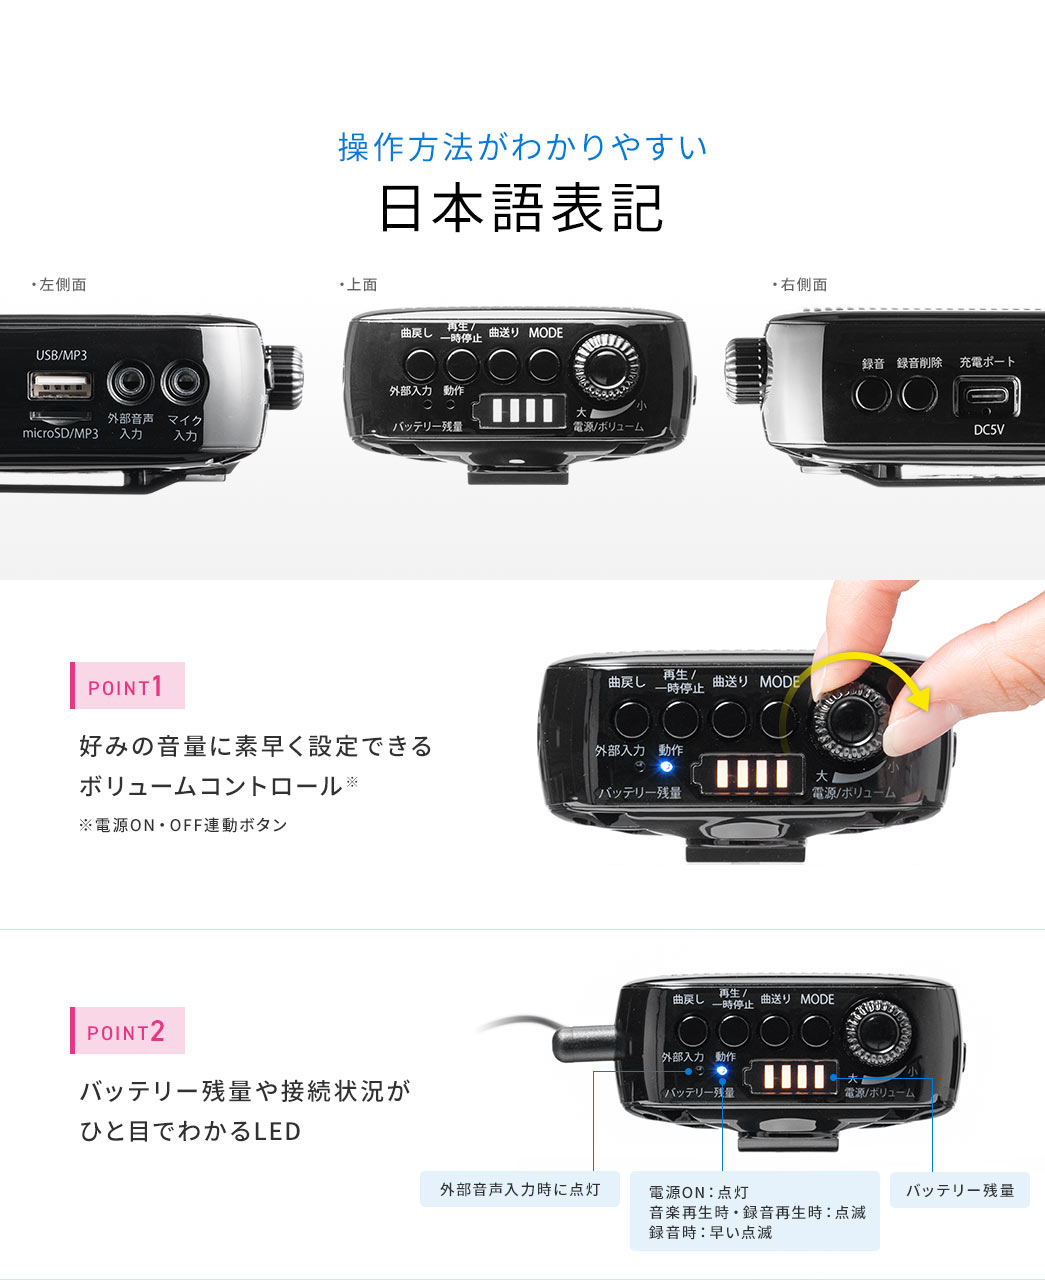 操作方法がわかりやすい日本語表記 好みの音量に素早く設定できるボリュームコントロール バッテリー残量や接続状況がひと目でわかるLED